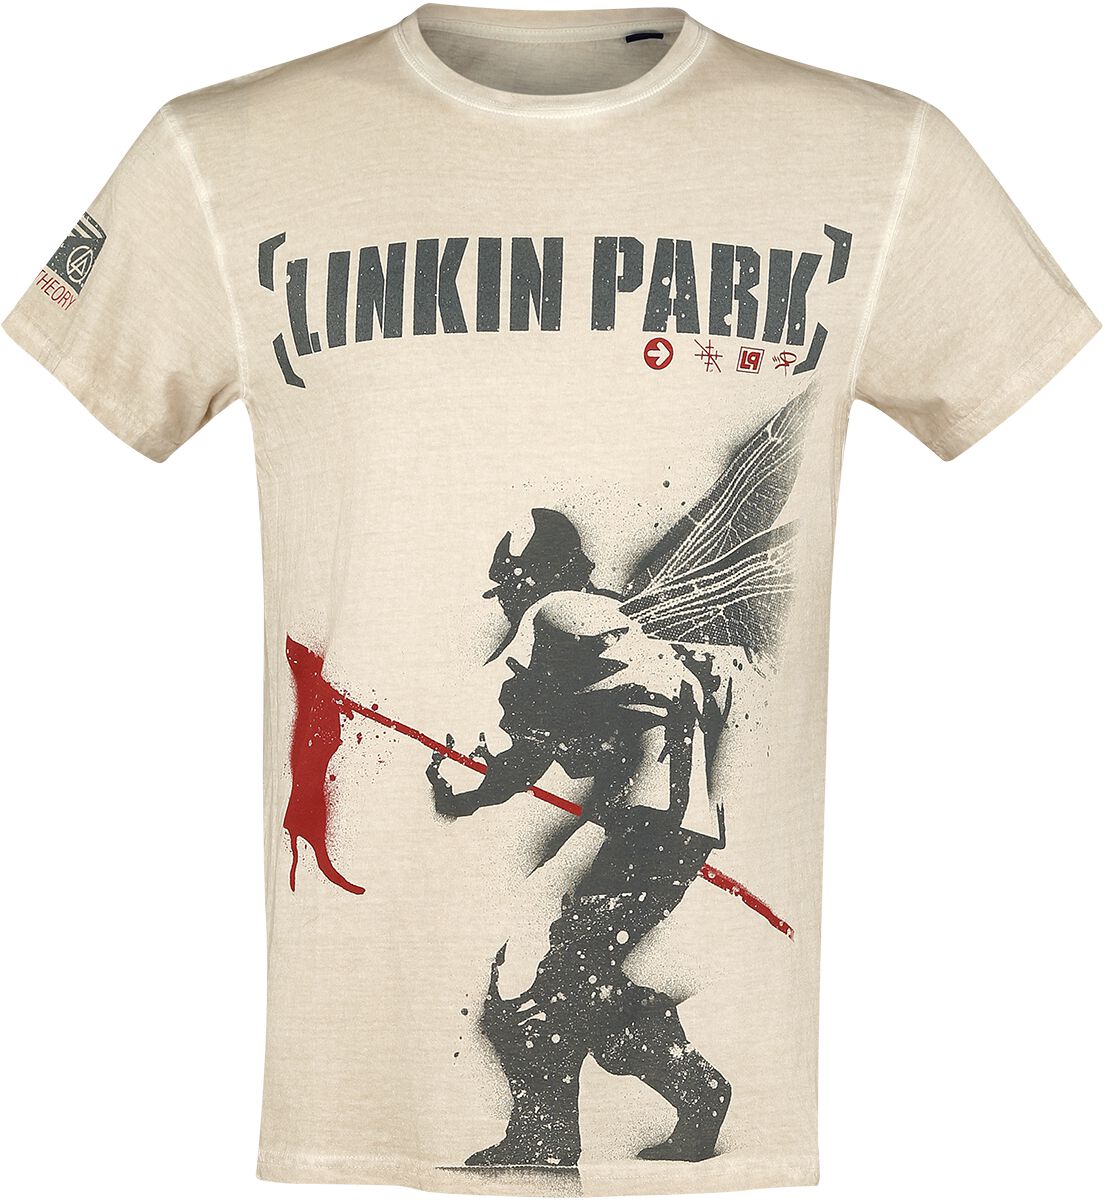 Linkin Park T-Shirt - Hybrid Theory - M bis 4XL - für Männer - Größe 3XL - altweiß  - EMP exklusives Merchandise!